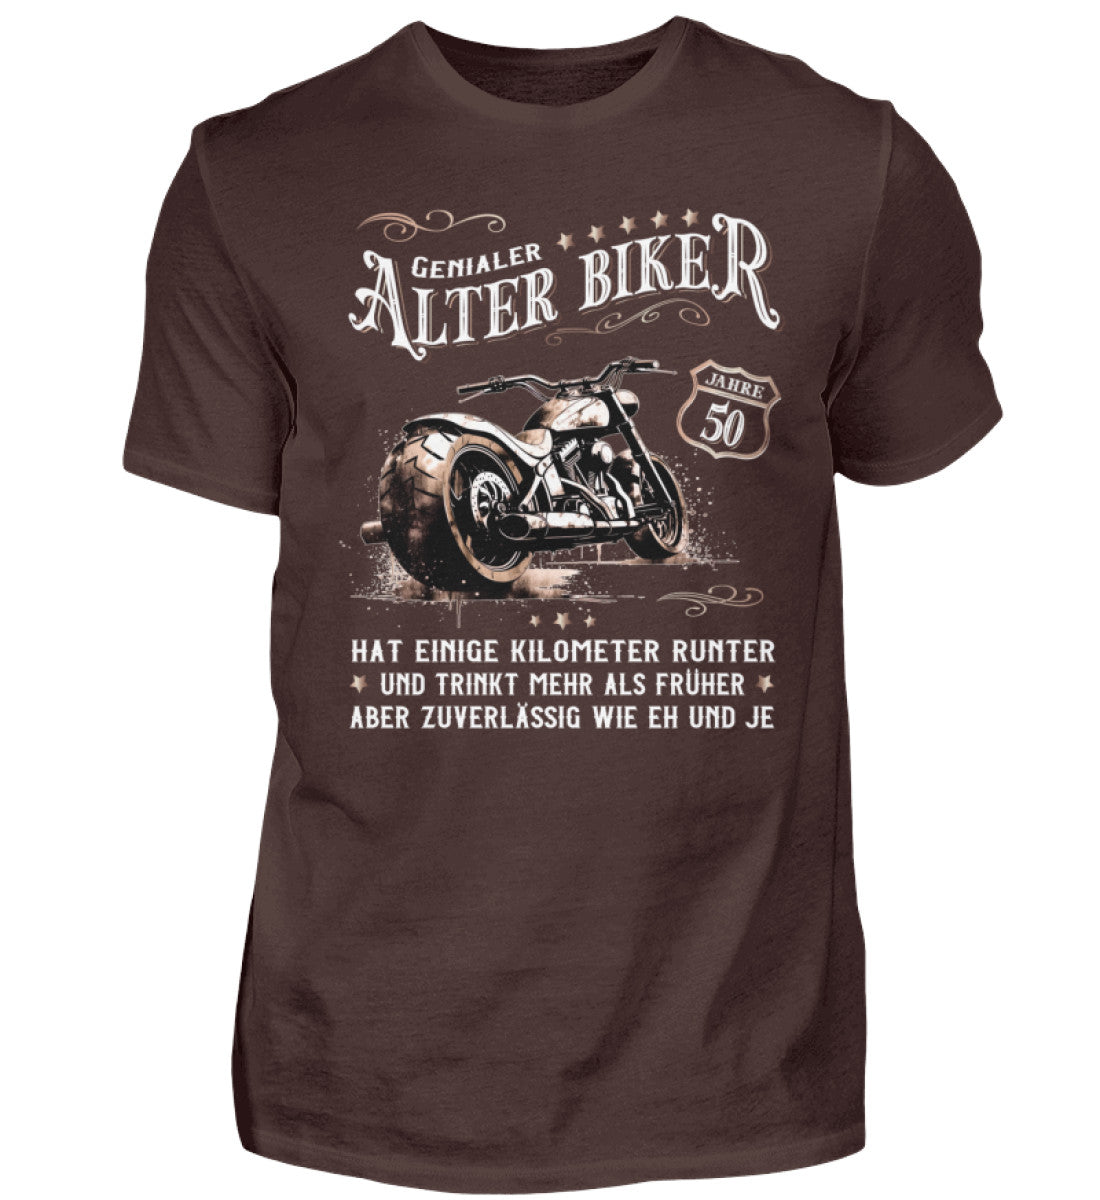 Ein Biker T-Shirt zum Geburtstag für Motorradfahrer von Wingbikers mit dem Aufdruck, Alter Biker - 50 Jahre - Einige Kilometer runter, trinkt mehr - aber zuverlässig wie eh und je - in braun.